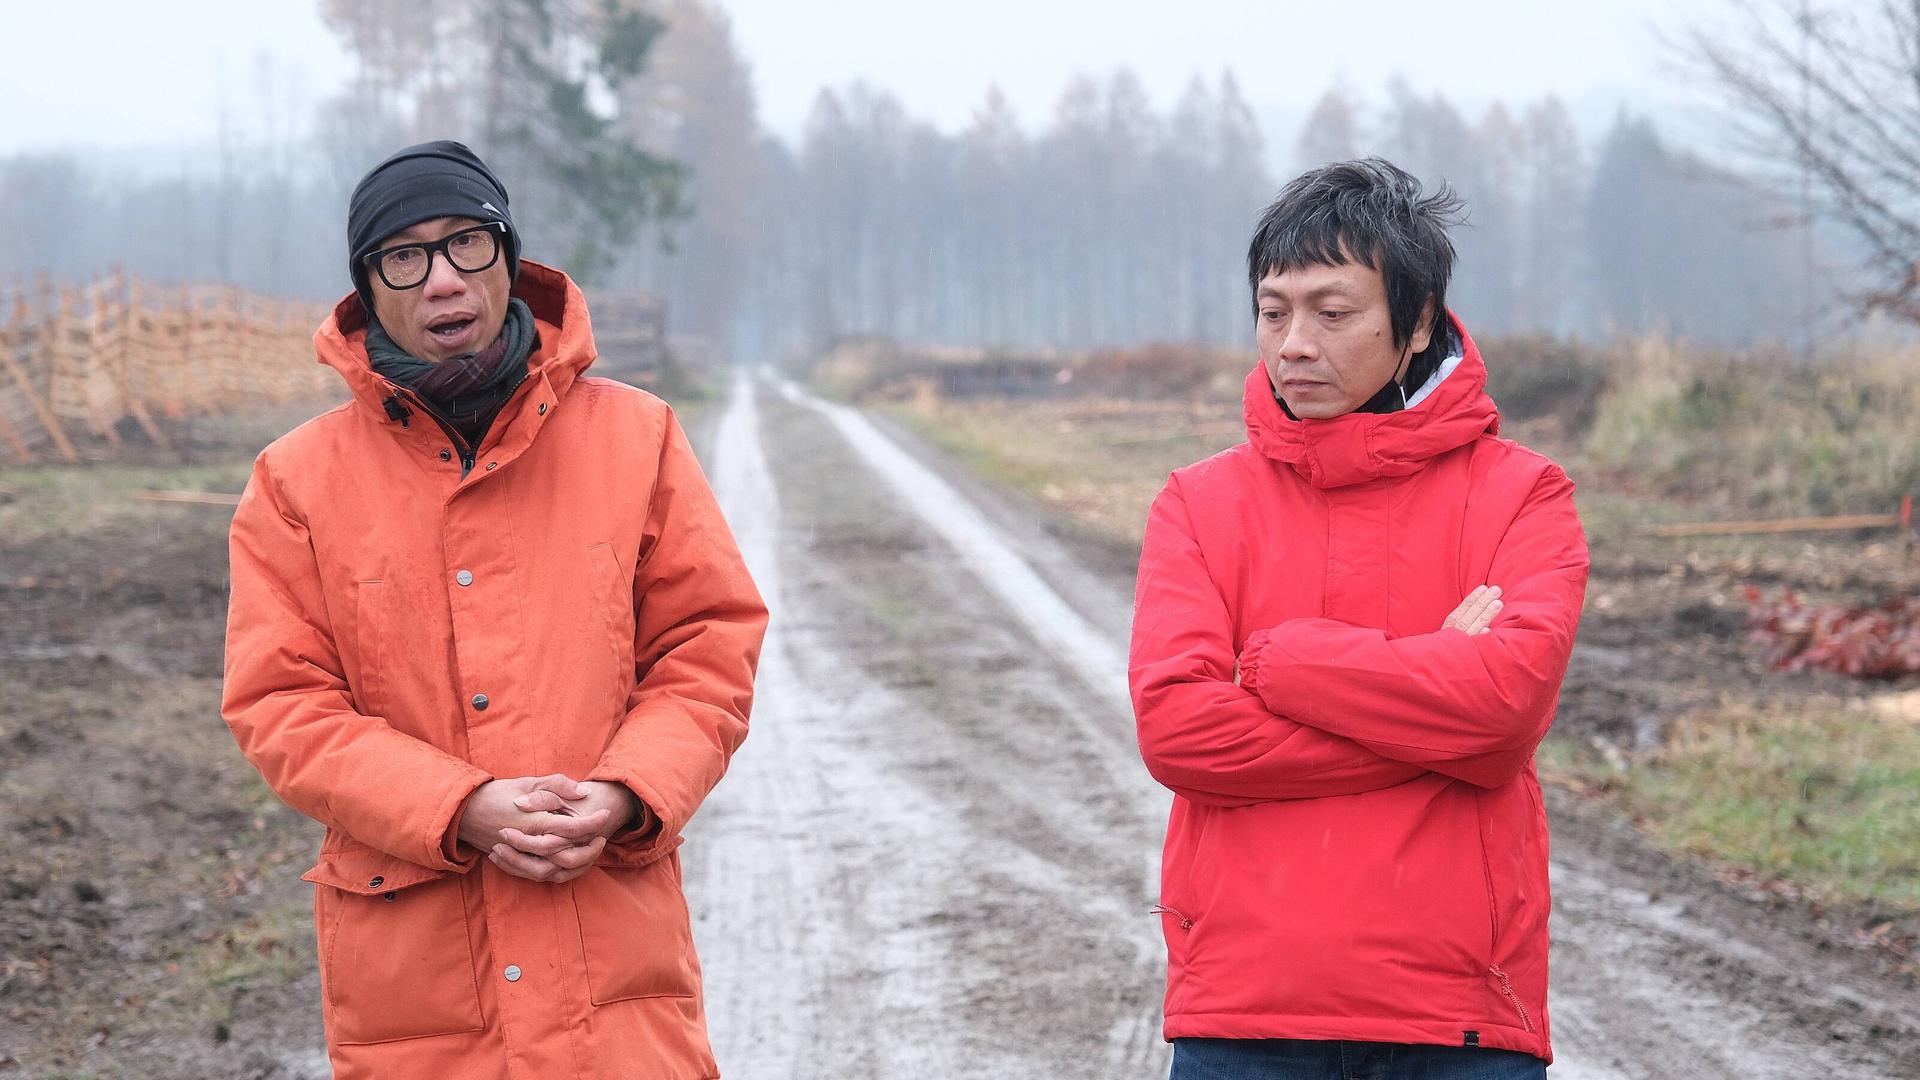 Iswanto Hartono und Reza Afisina von der Künstlergruppe Ruangrupa tragen orange Anoraks, hinter ihnen ist ein Forstweg zu sehen.